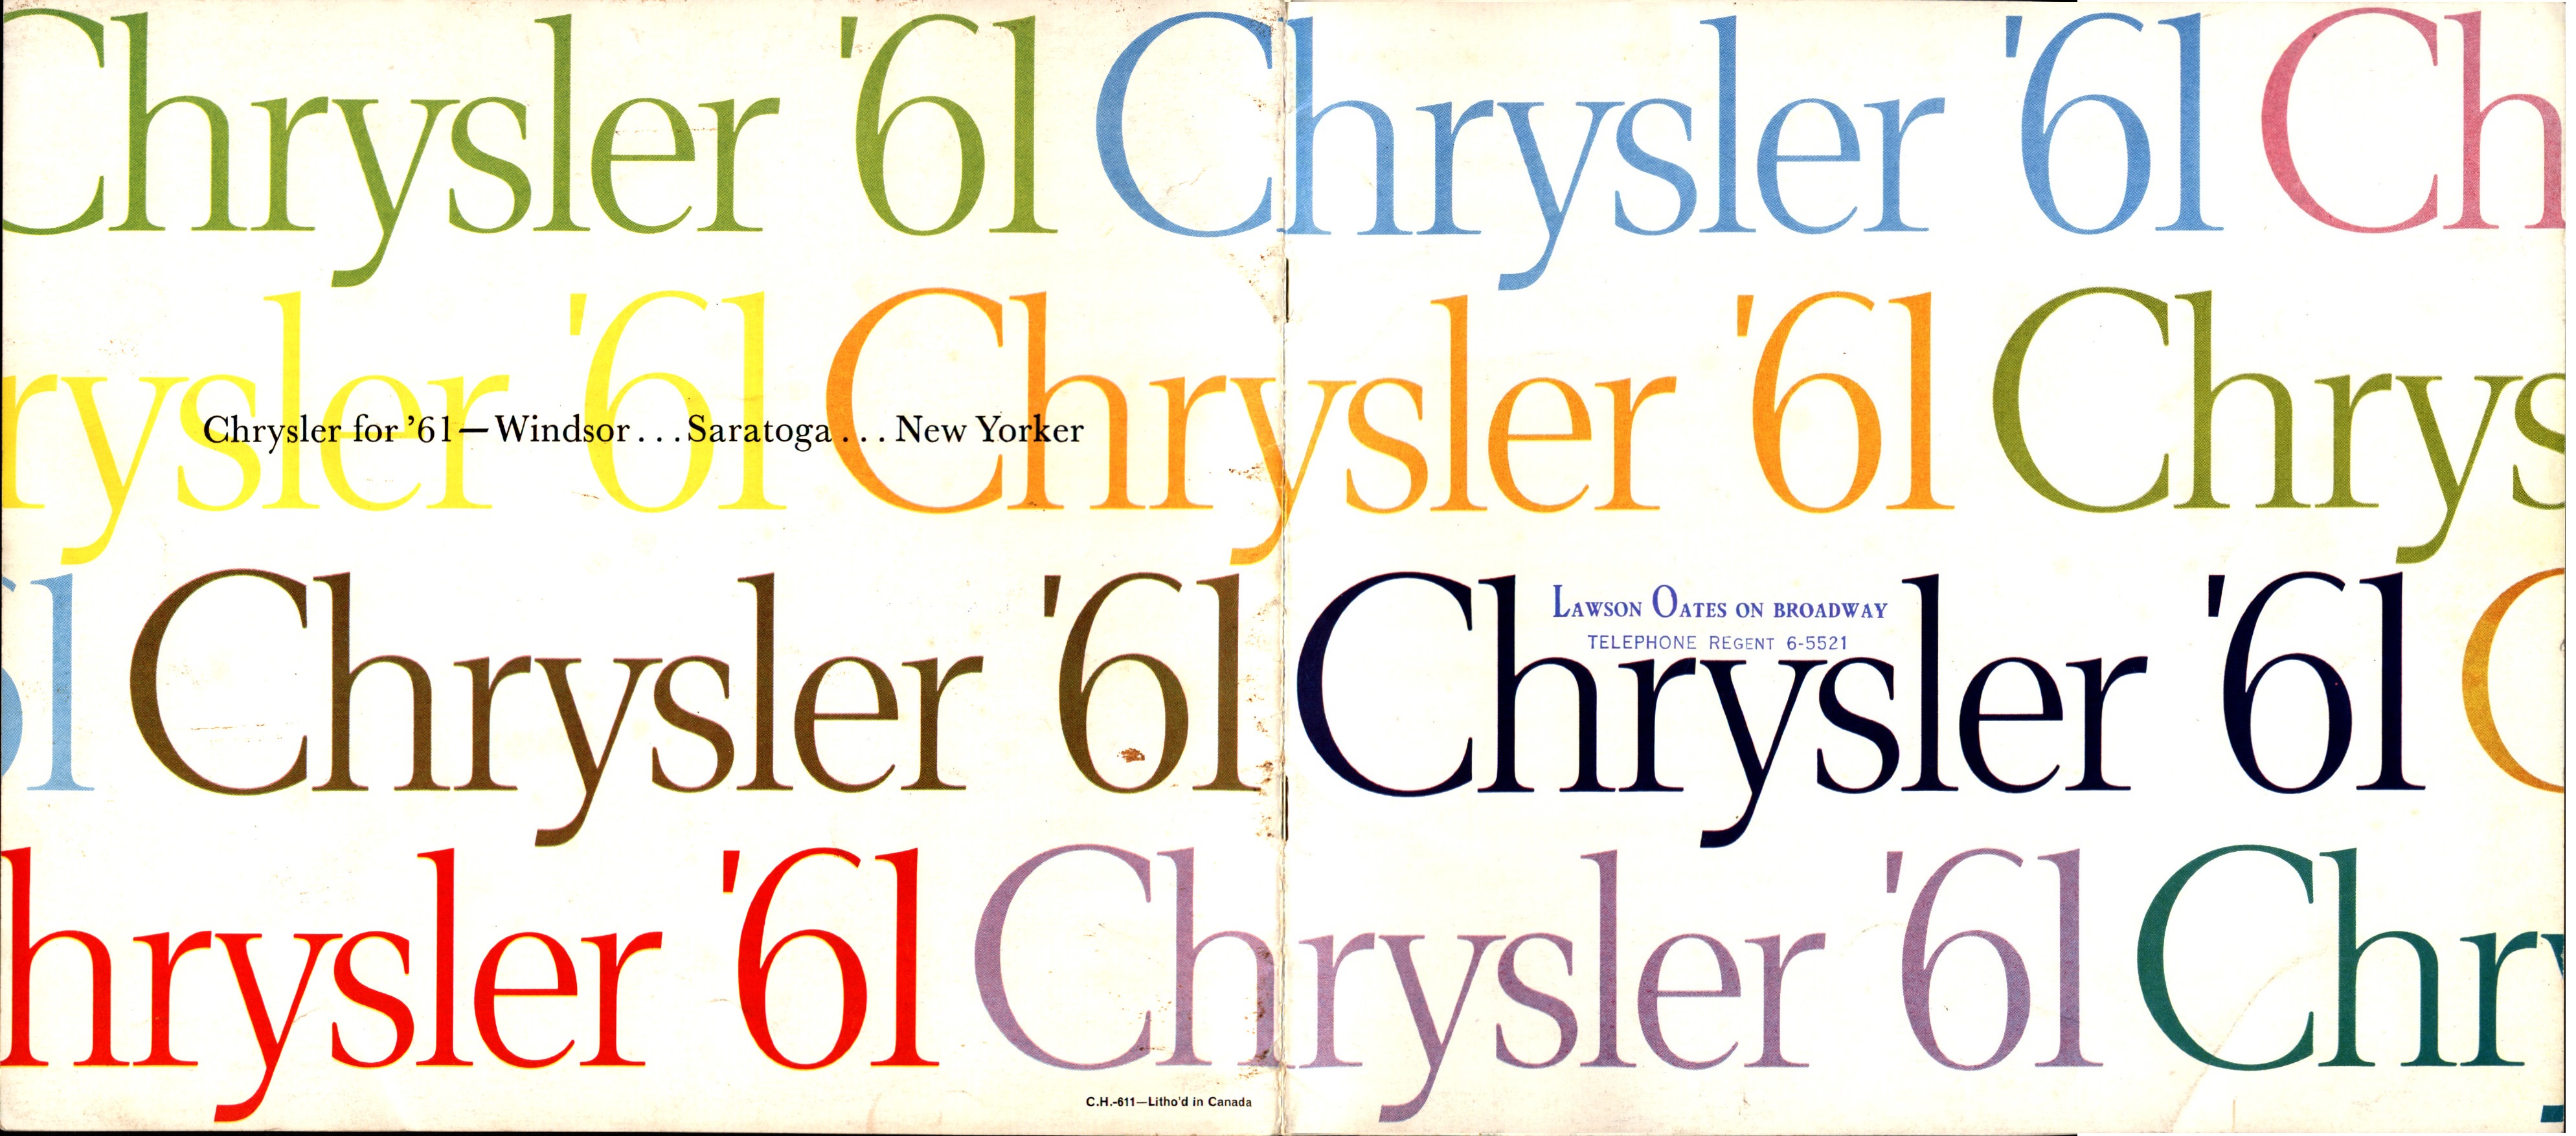 1961 Chrysler Full Line Brochure (Cdn) 16-01